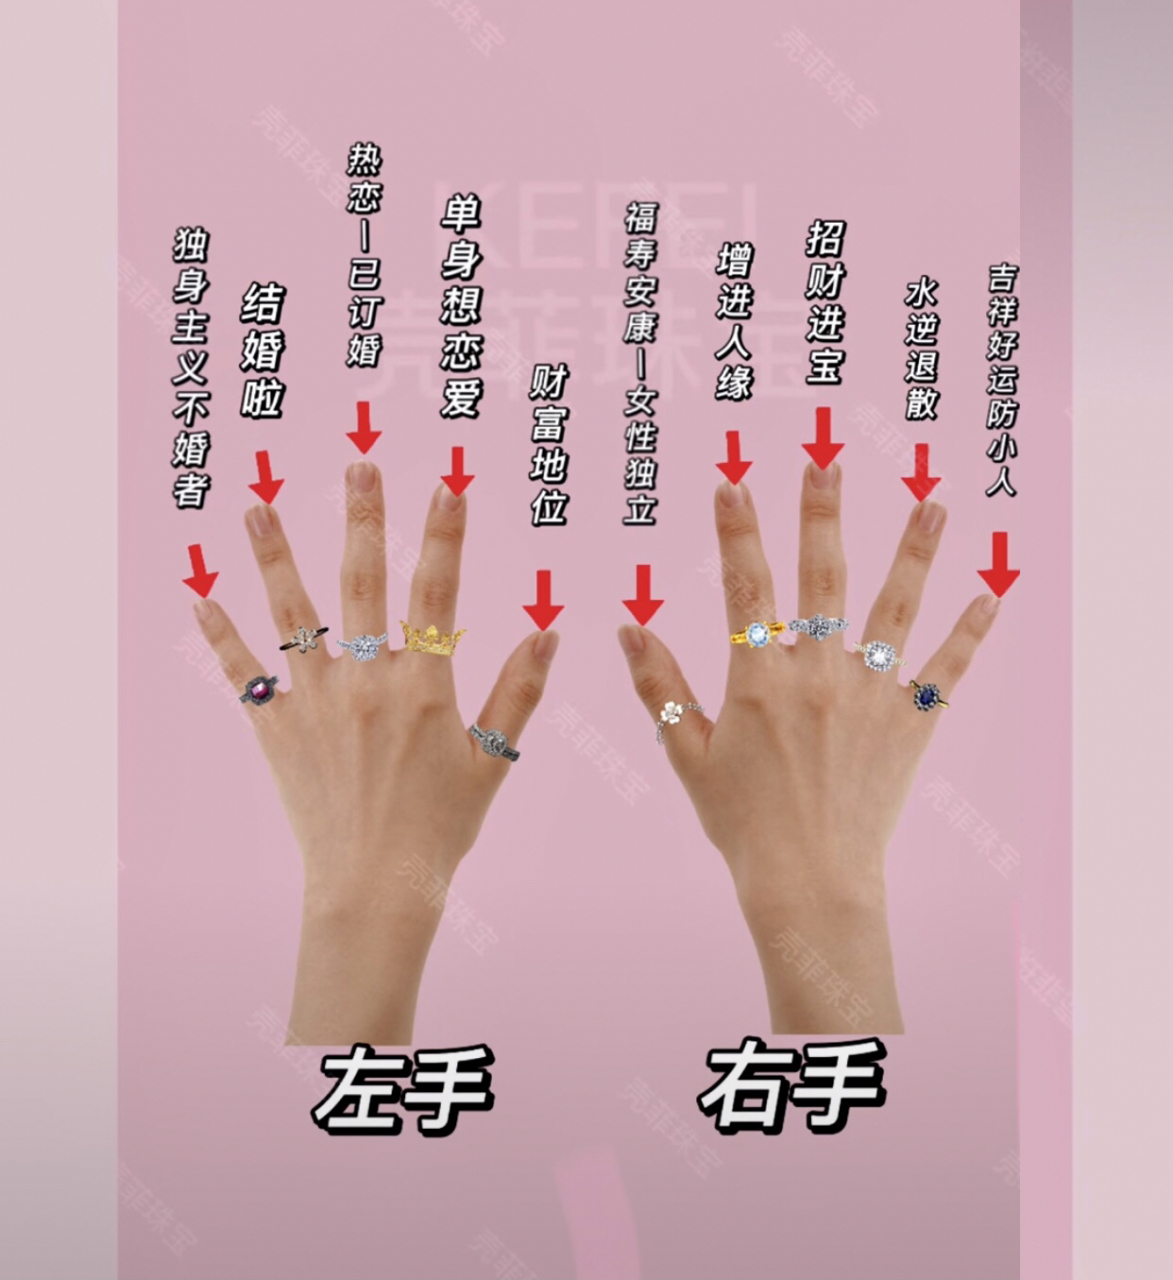 十指戴戒指的含义,我们先来看左手左手的大拇指,代表:财富与权利